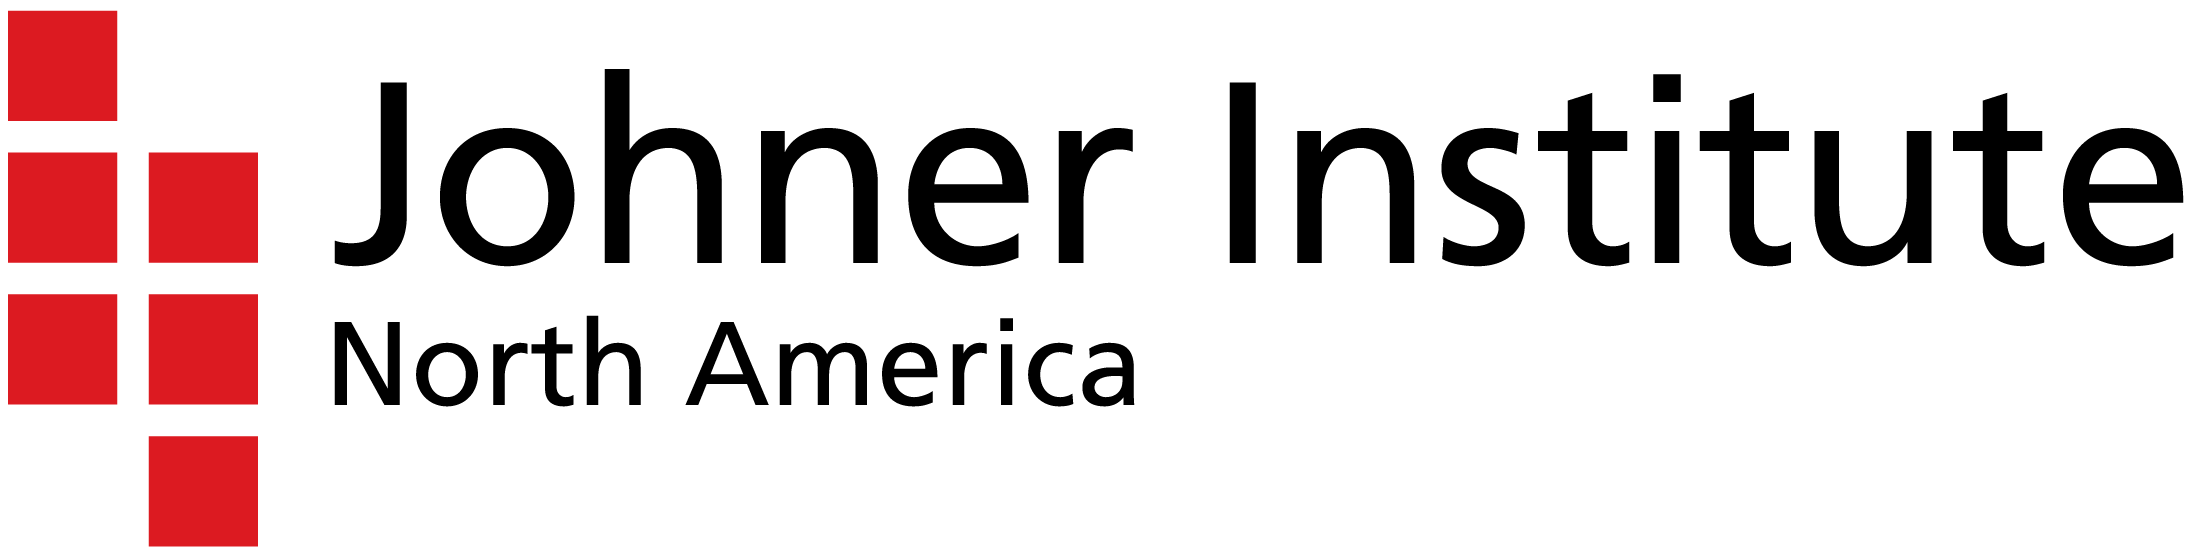 Johner Institute North America Inc.